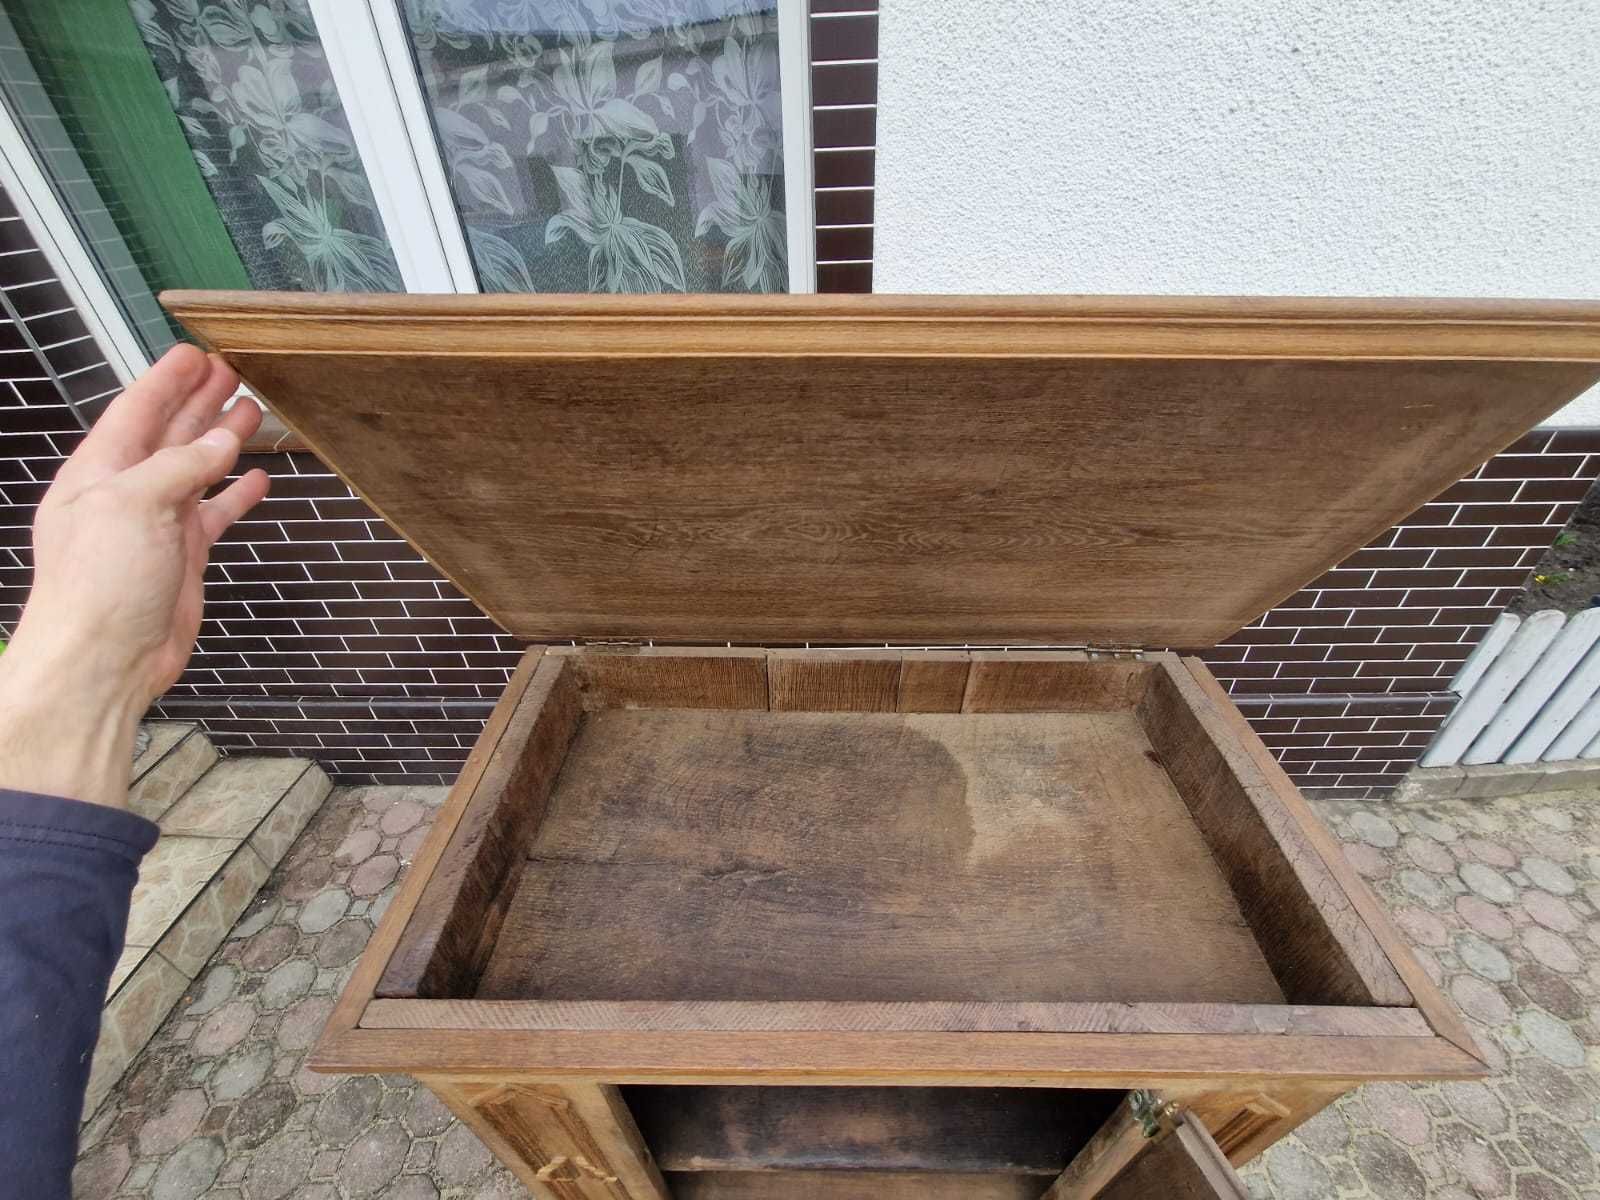 skrzynia komoda antyczna zamkowa drewniana szafa biurko szafka kufer